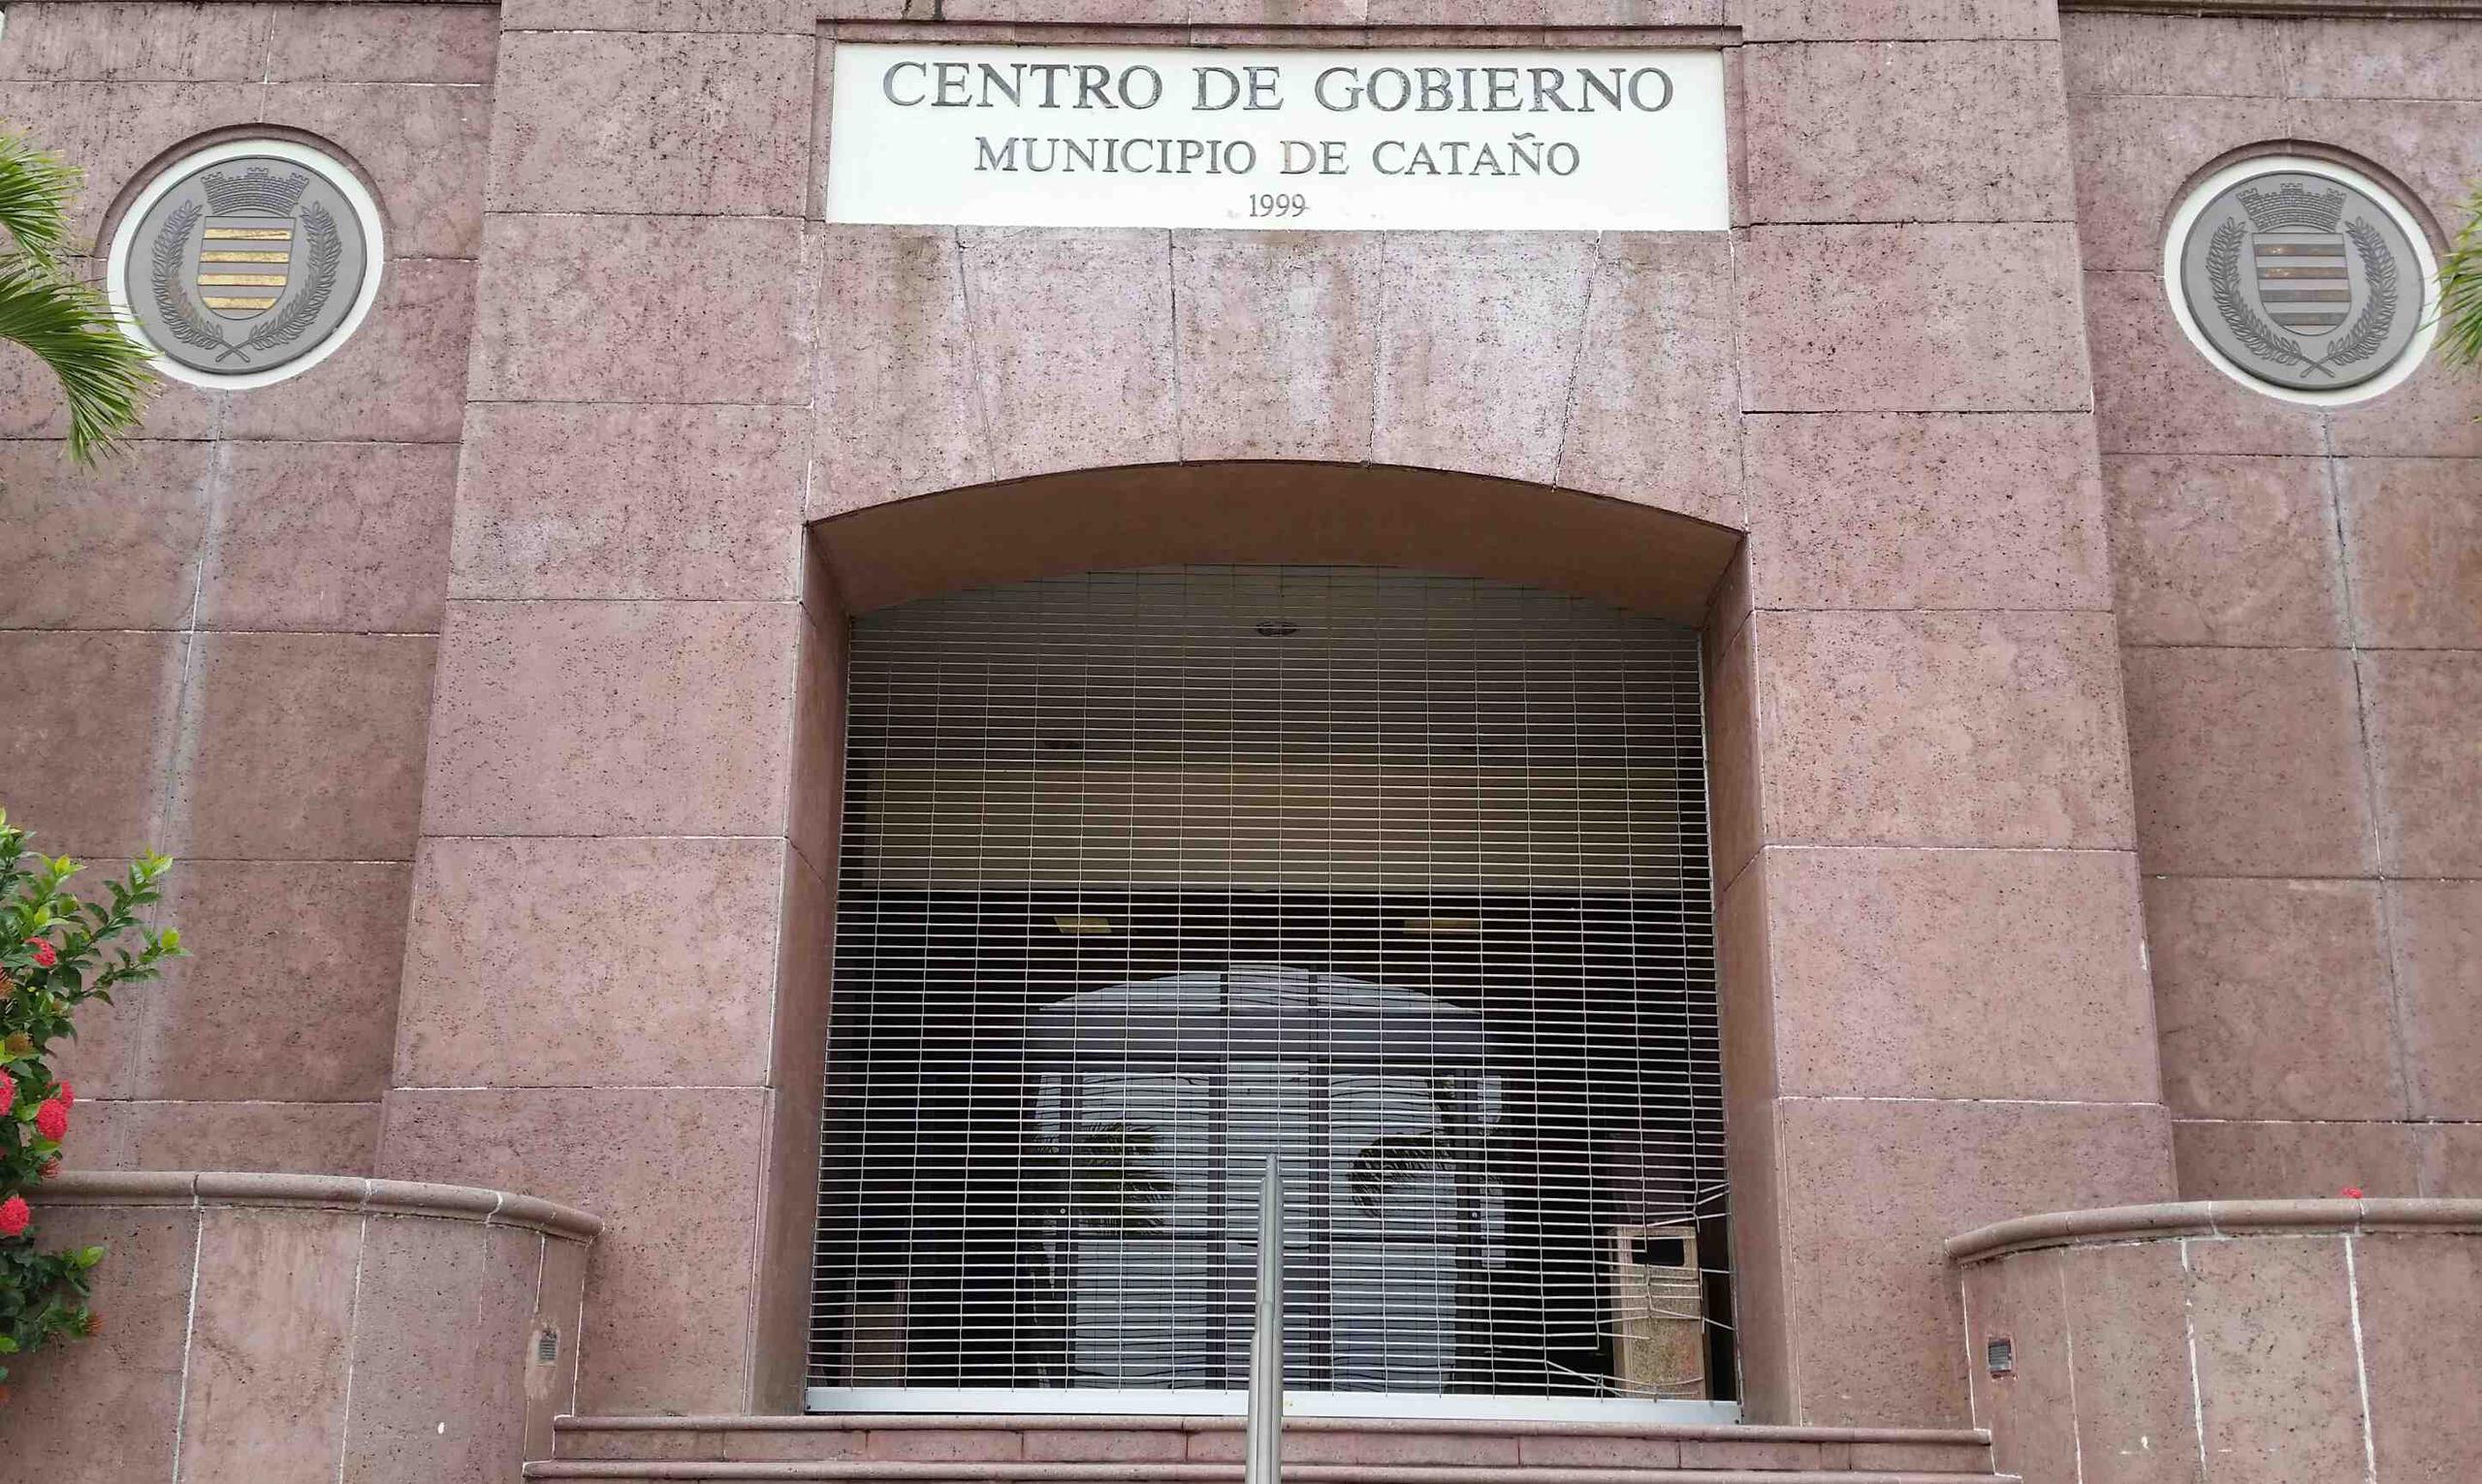 El informe de la Oficina del Contralor sobre el Municipio de Cataño contiene ocho hallazgos. (GFR Media)